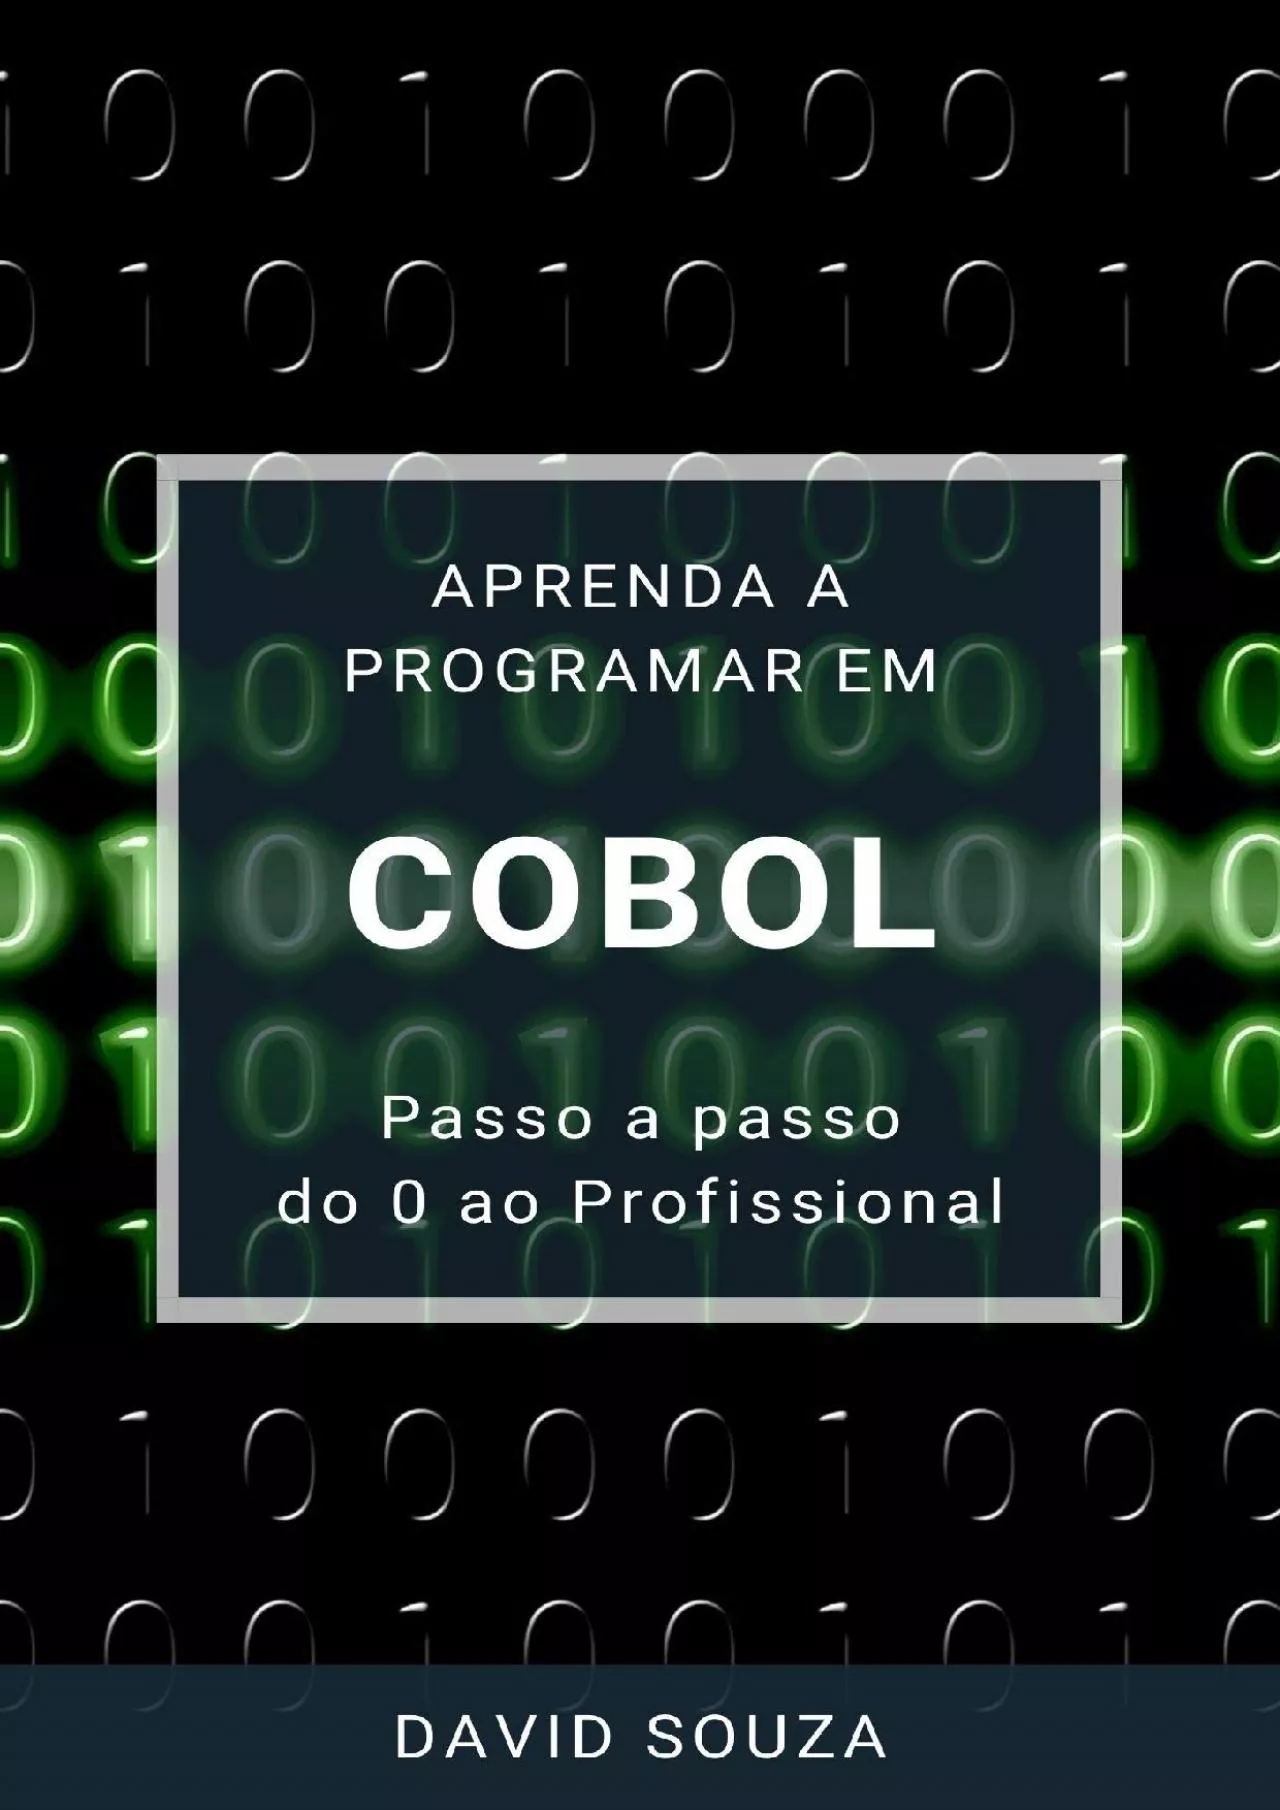 [FREE]-Aprenda a Programar em COBOL - Passo a Passo - do 0 ao Profissional (Portuguese